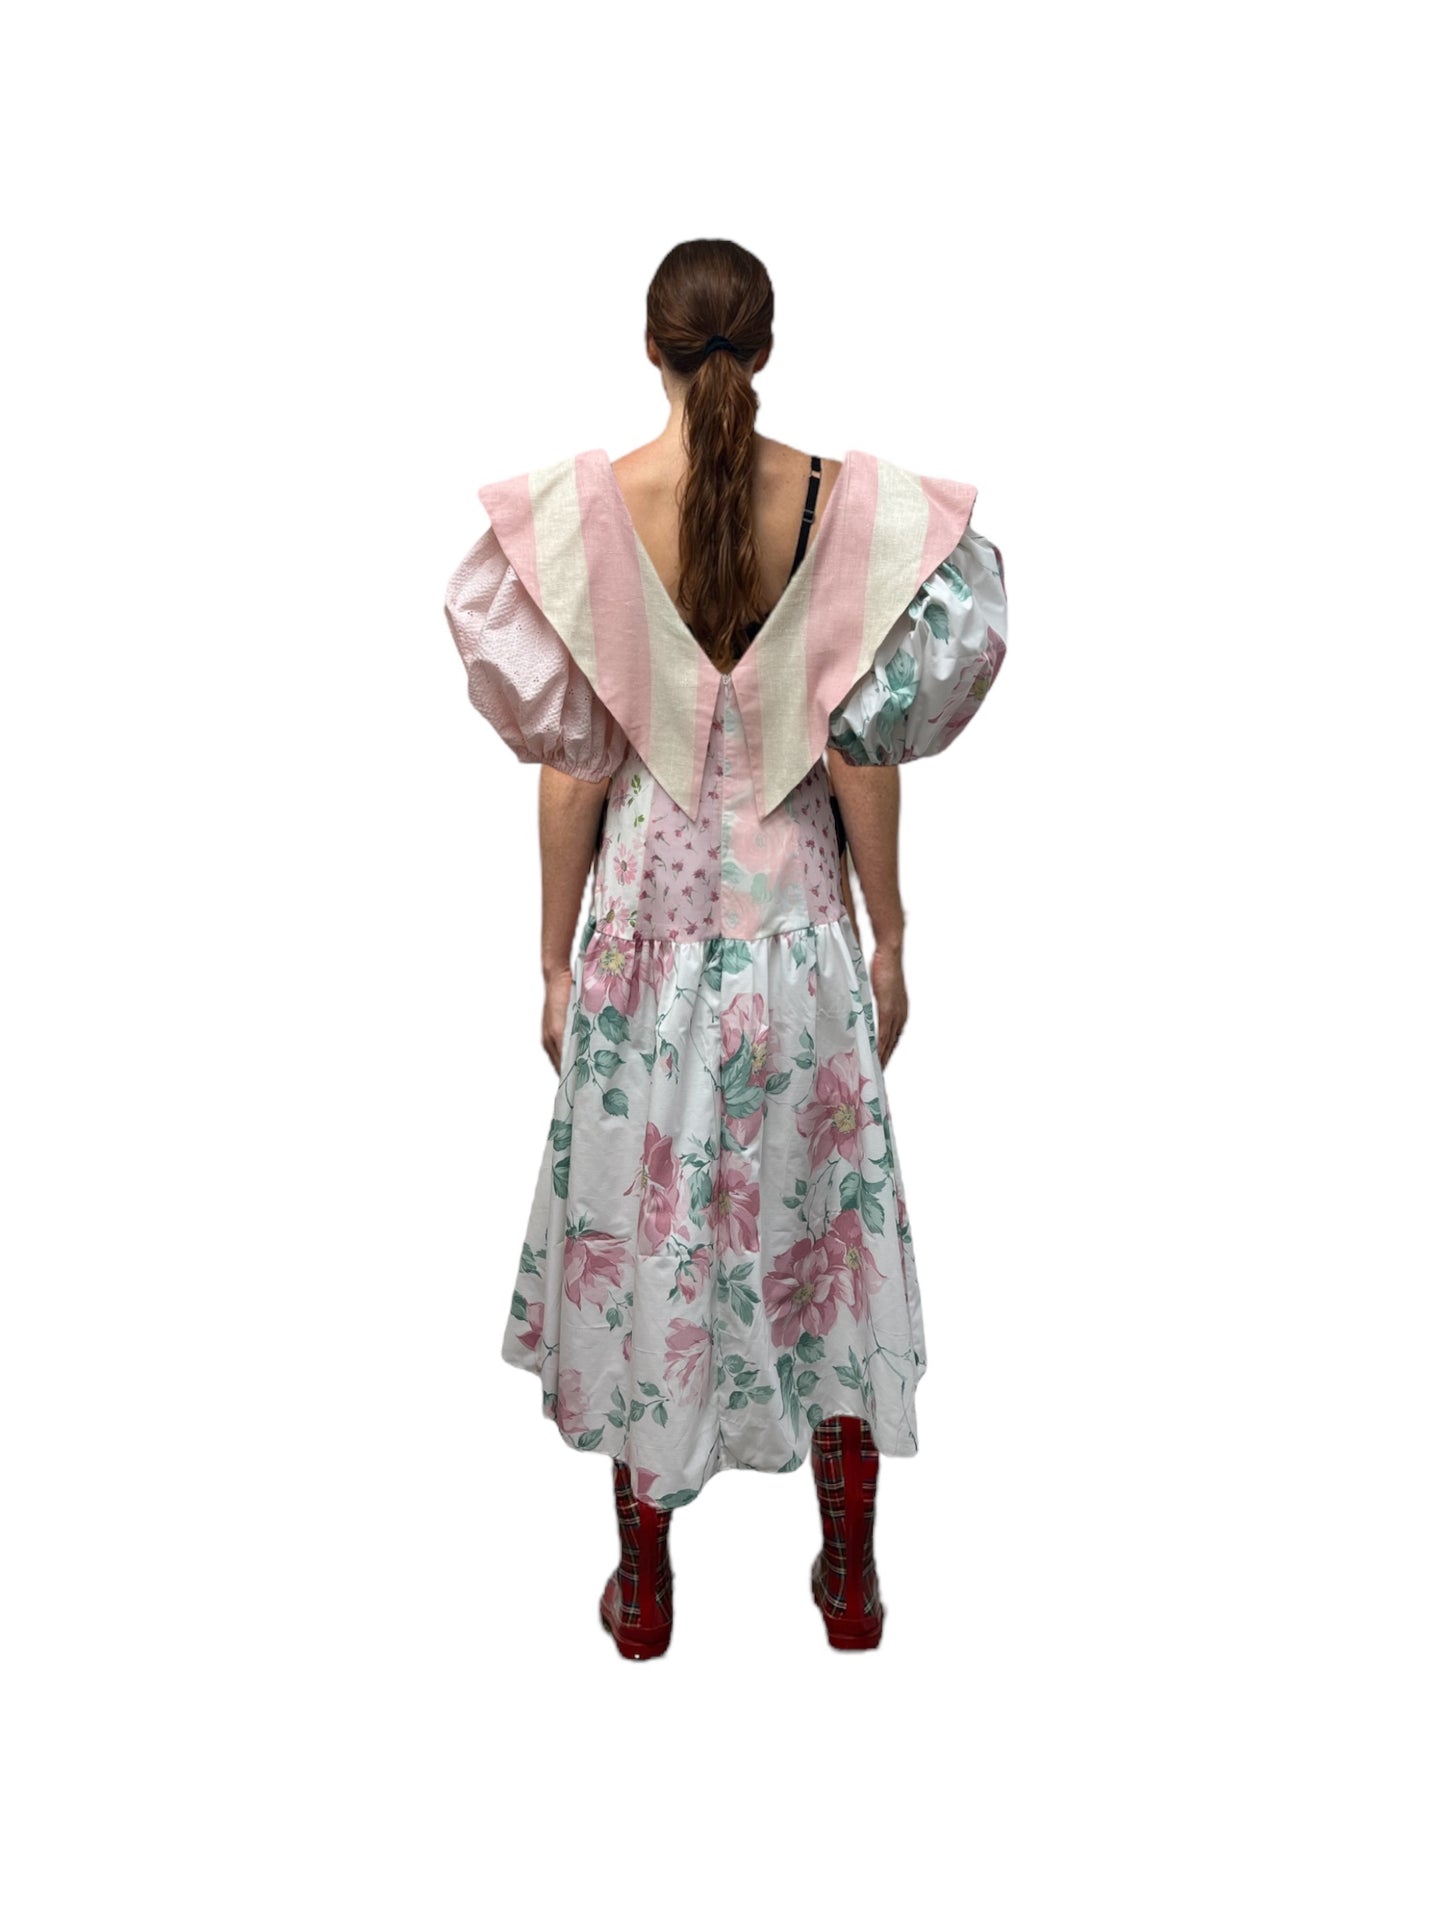 the Olga dress in custom pinks